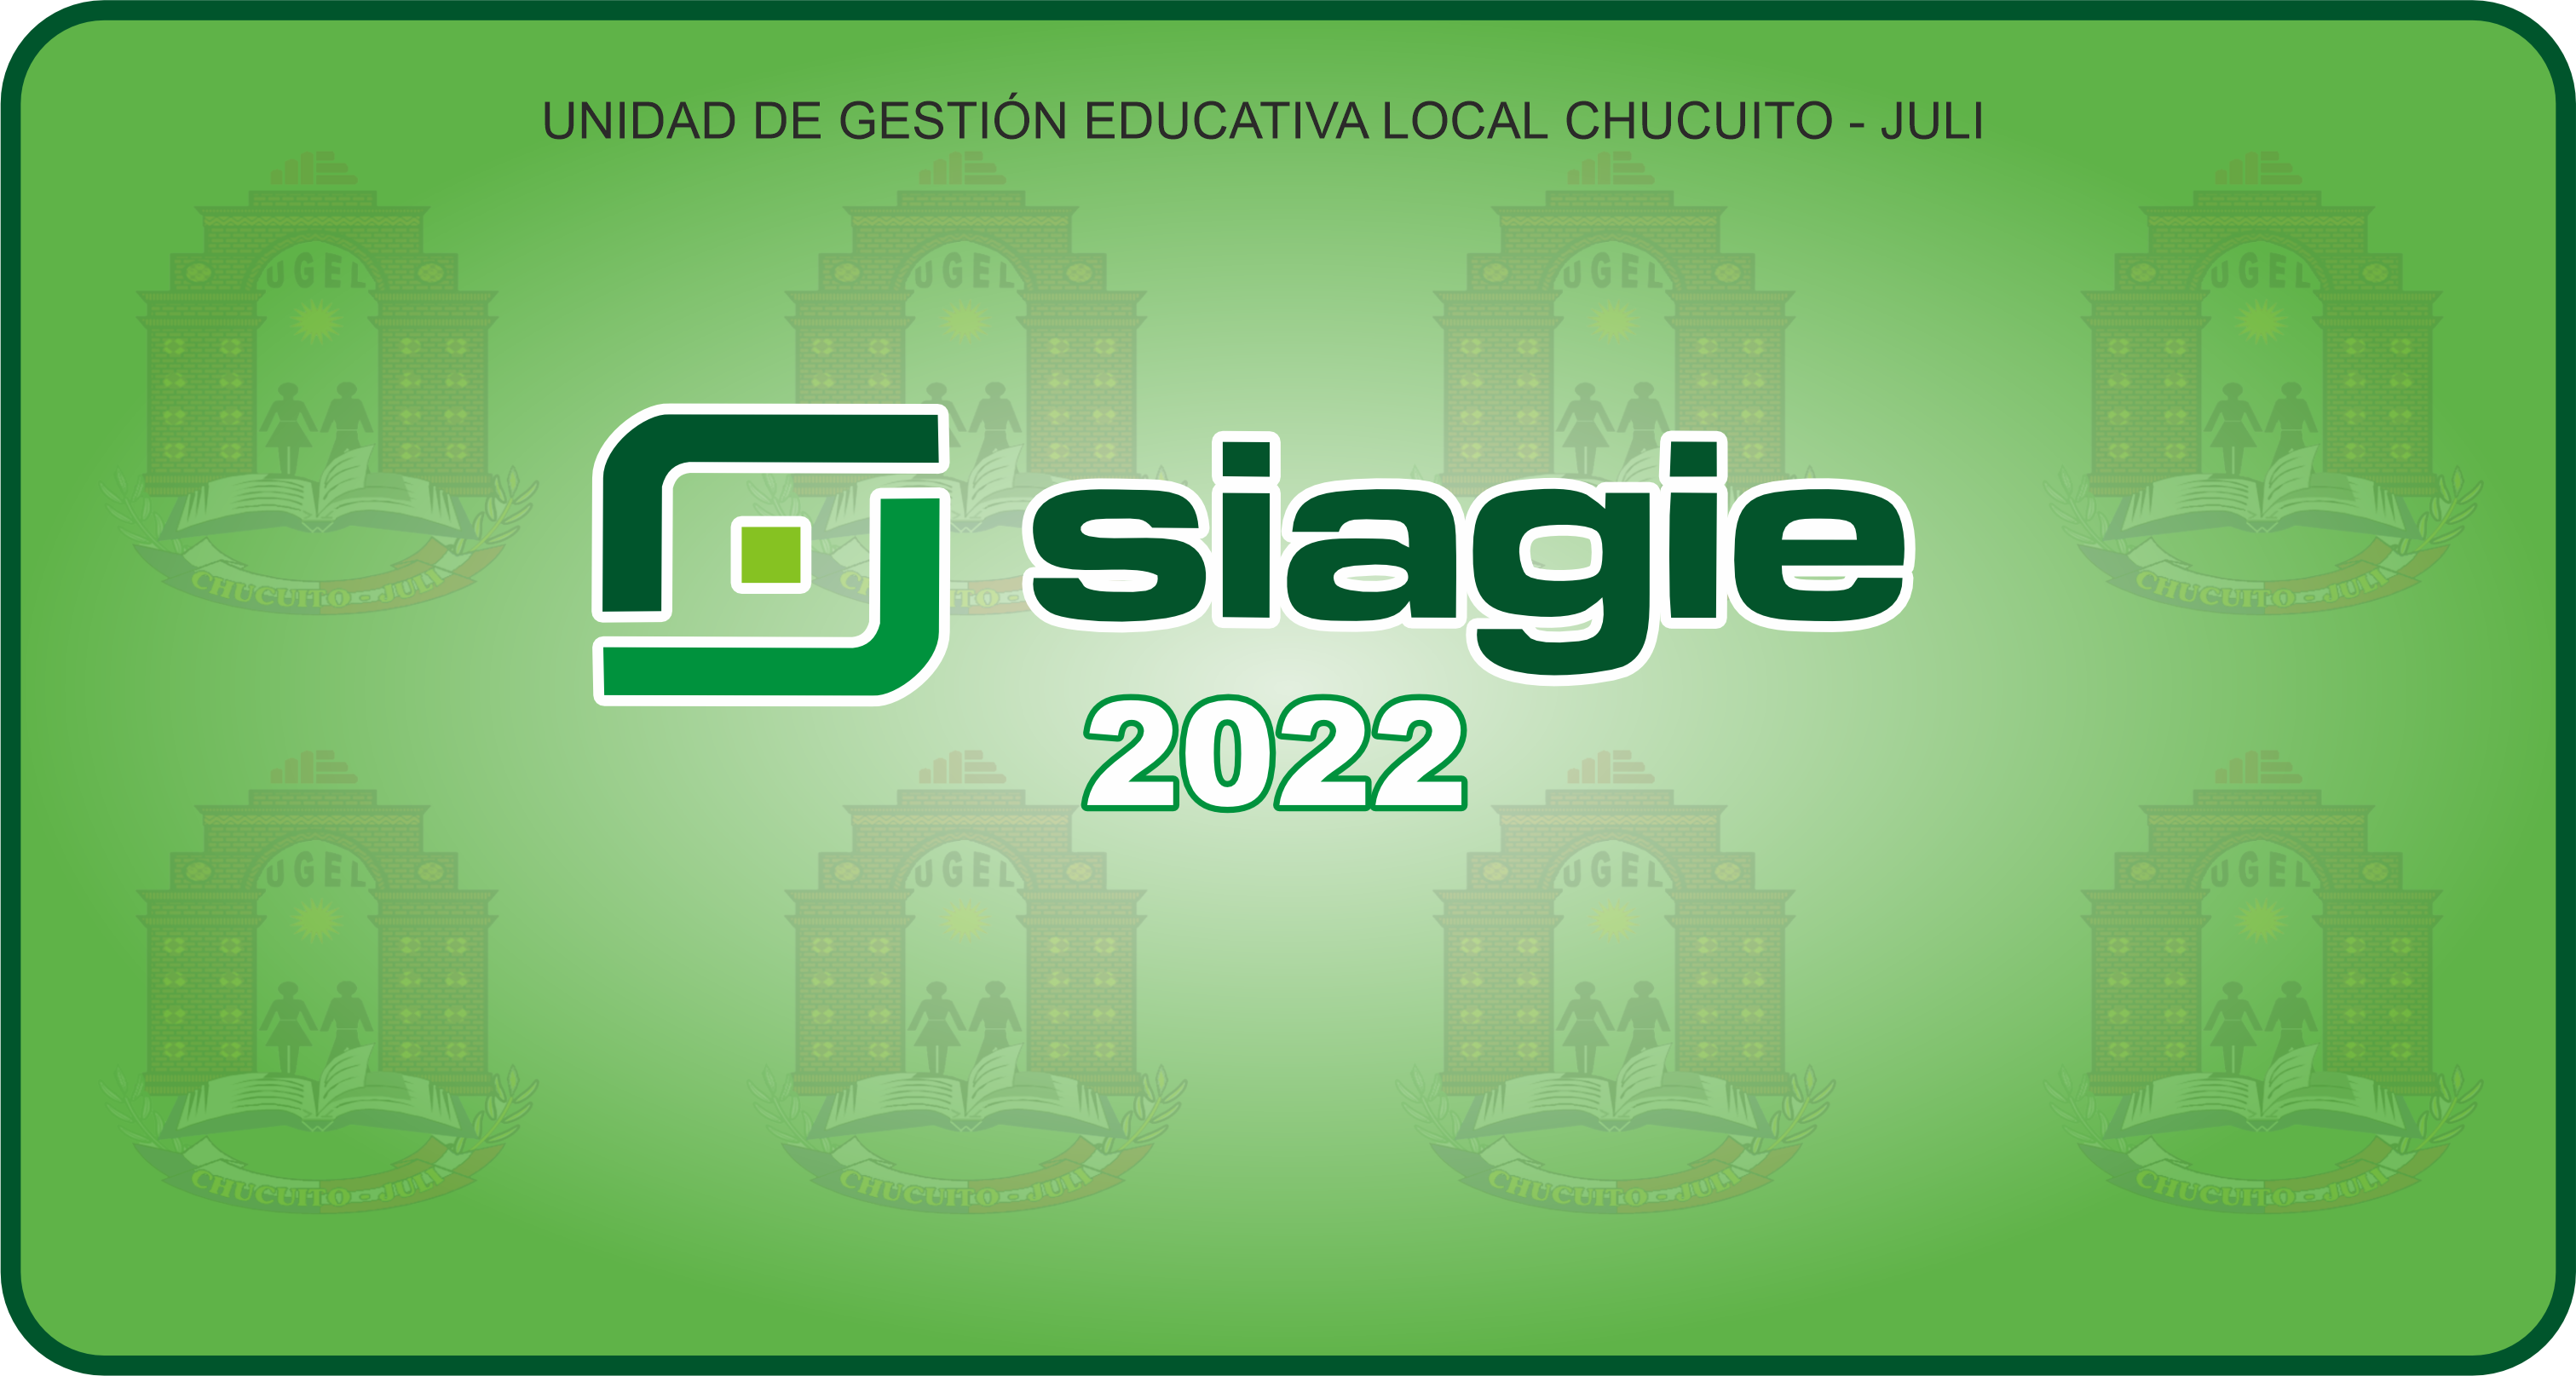 REITERA REGISTRO DE DEVOLUCIÓN DE TABLETAS 2021 EN EL SIAGIE (estudiantes y docentes)